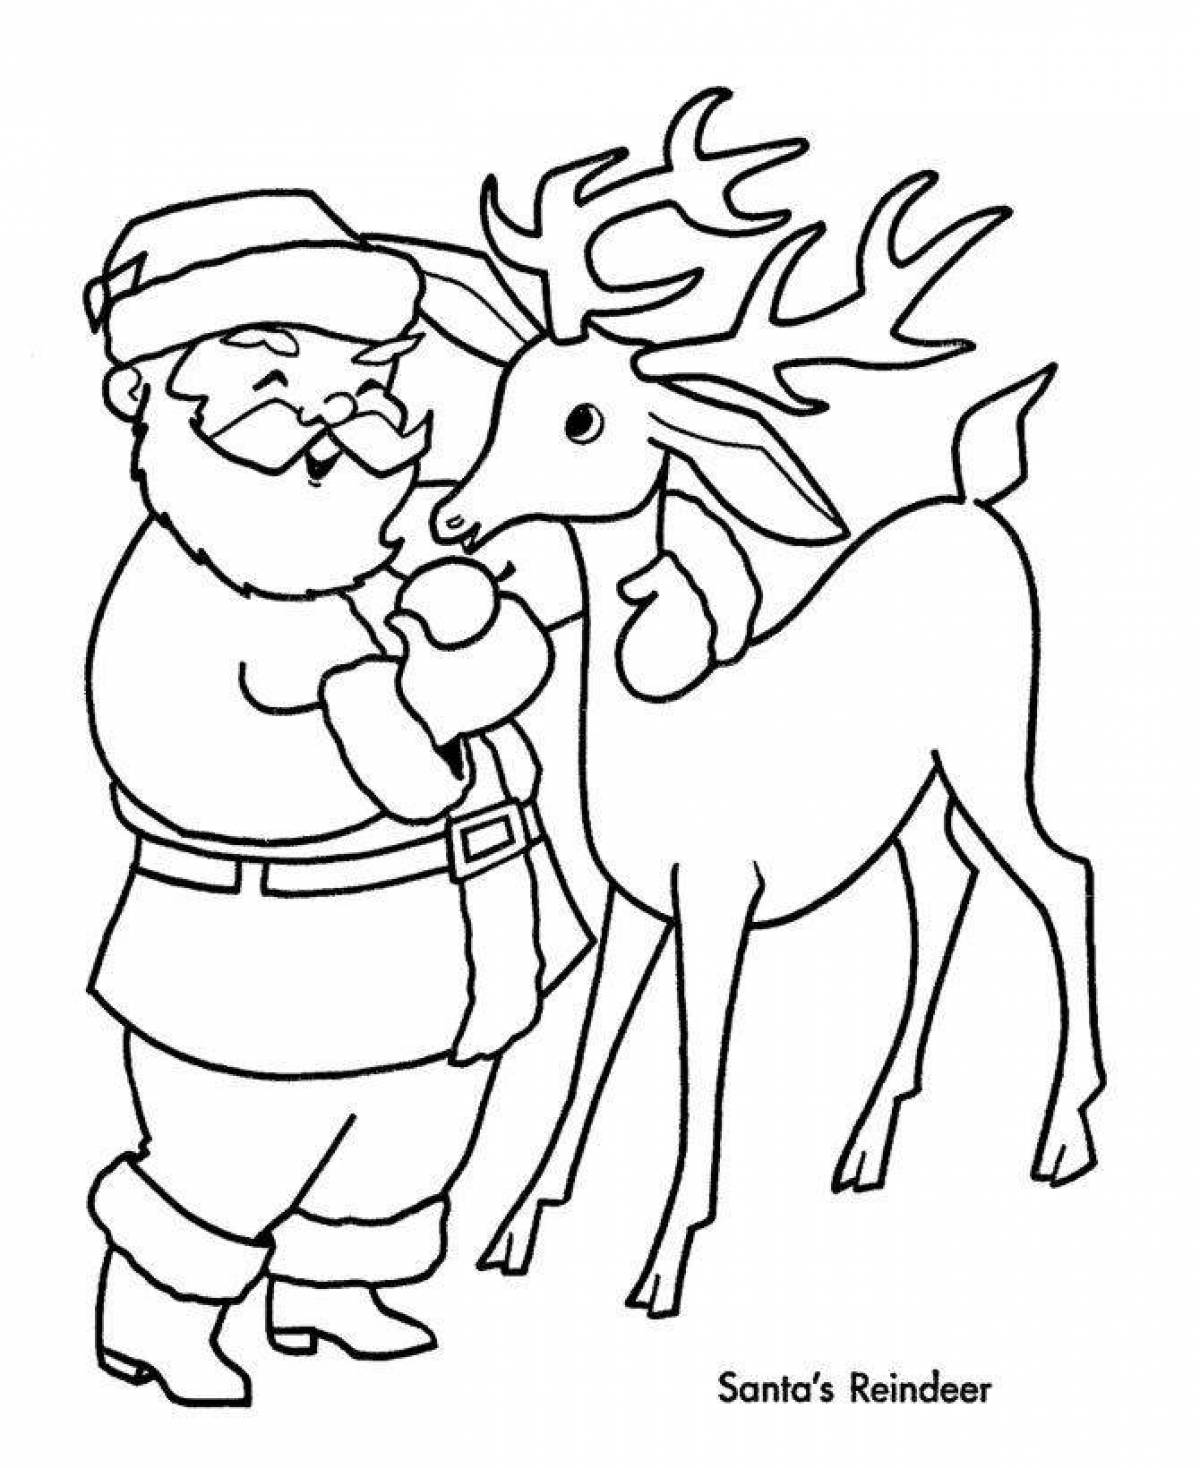 Санта-клаус и олени раскраски | Премиум векторы